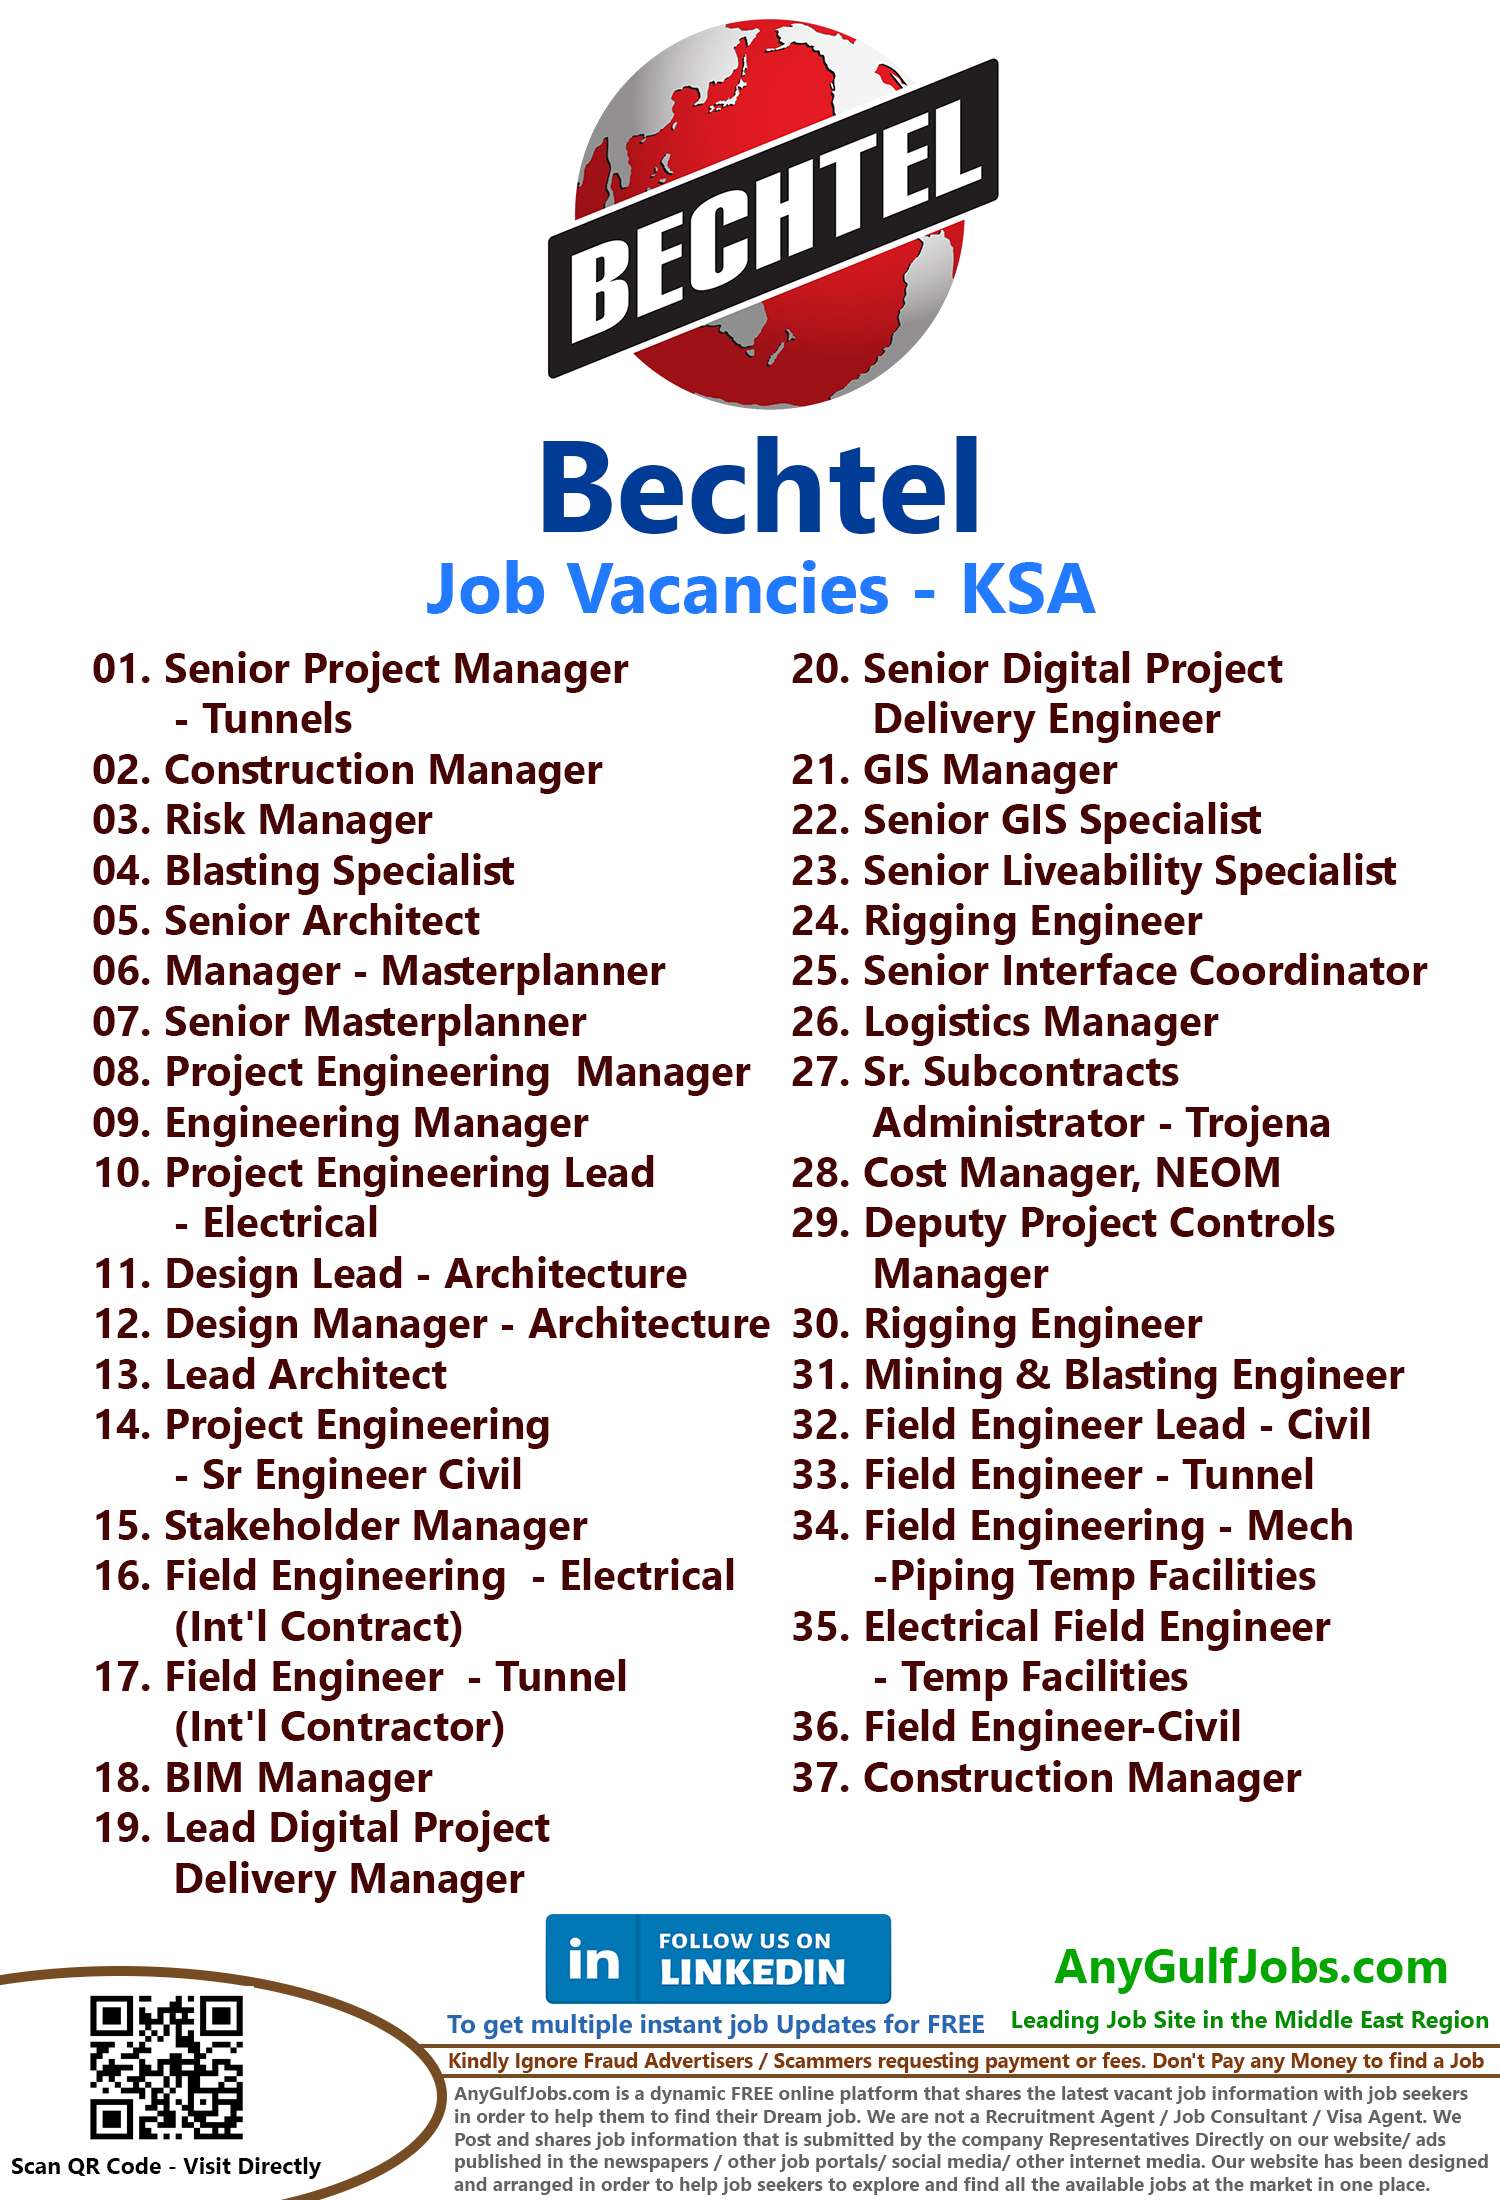 Bechtel Job Vacancies - KSA